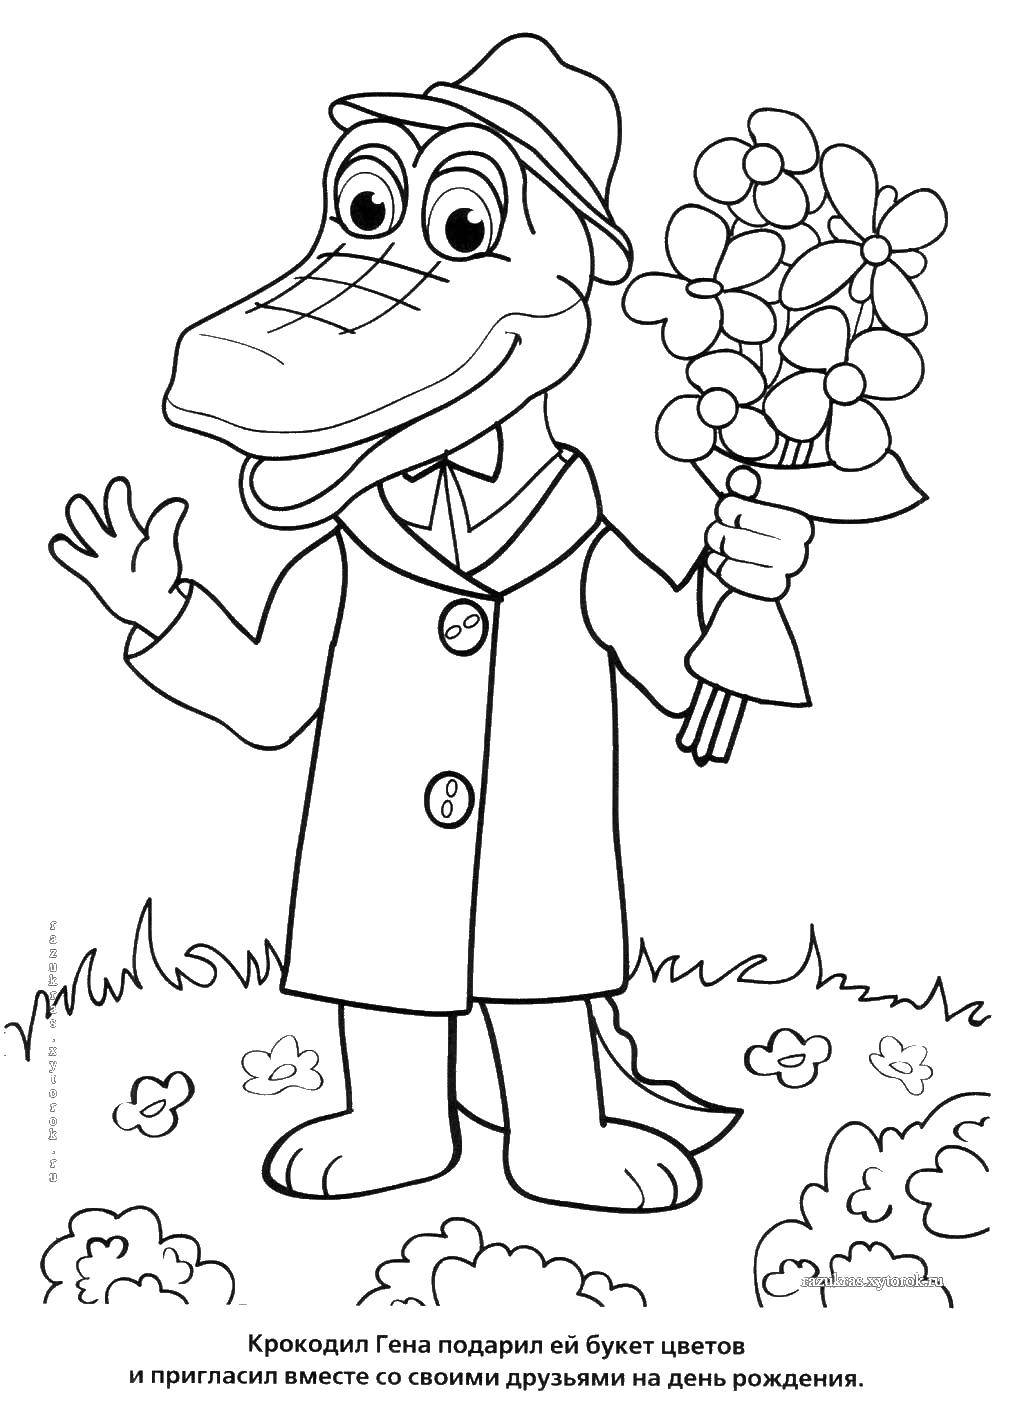 Название: Раскраска Крокодил гена. Категория: Персонаж из мультфильма. Теги: Персонаж из мультфильма, Чебурашка и Крокодил Гена.